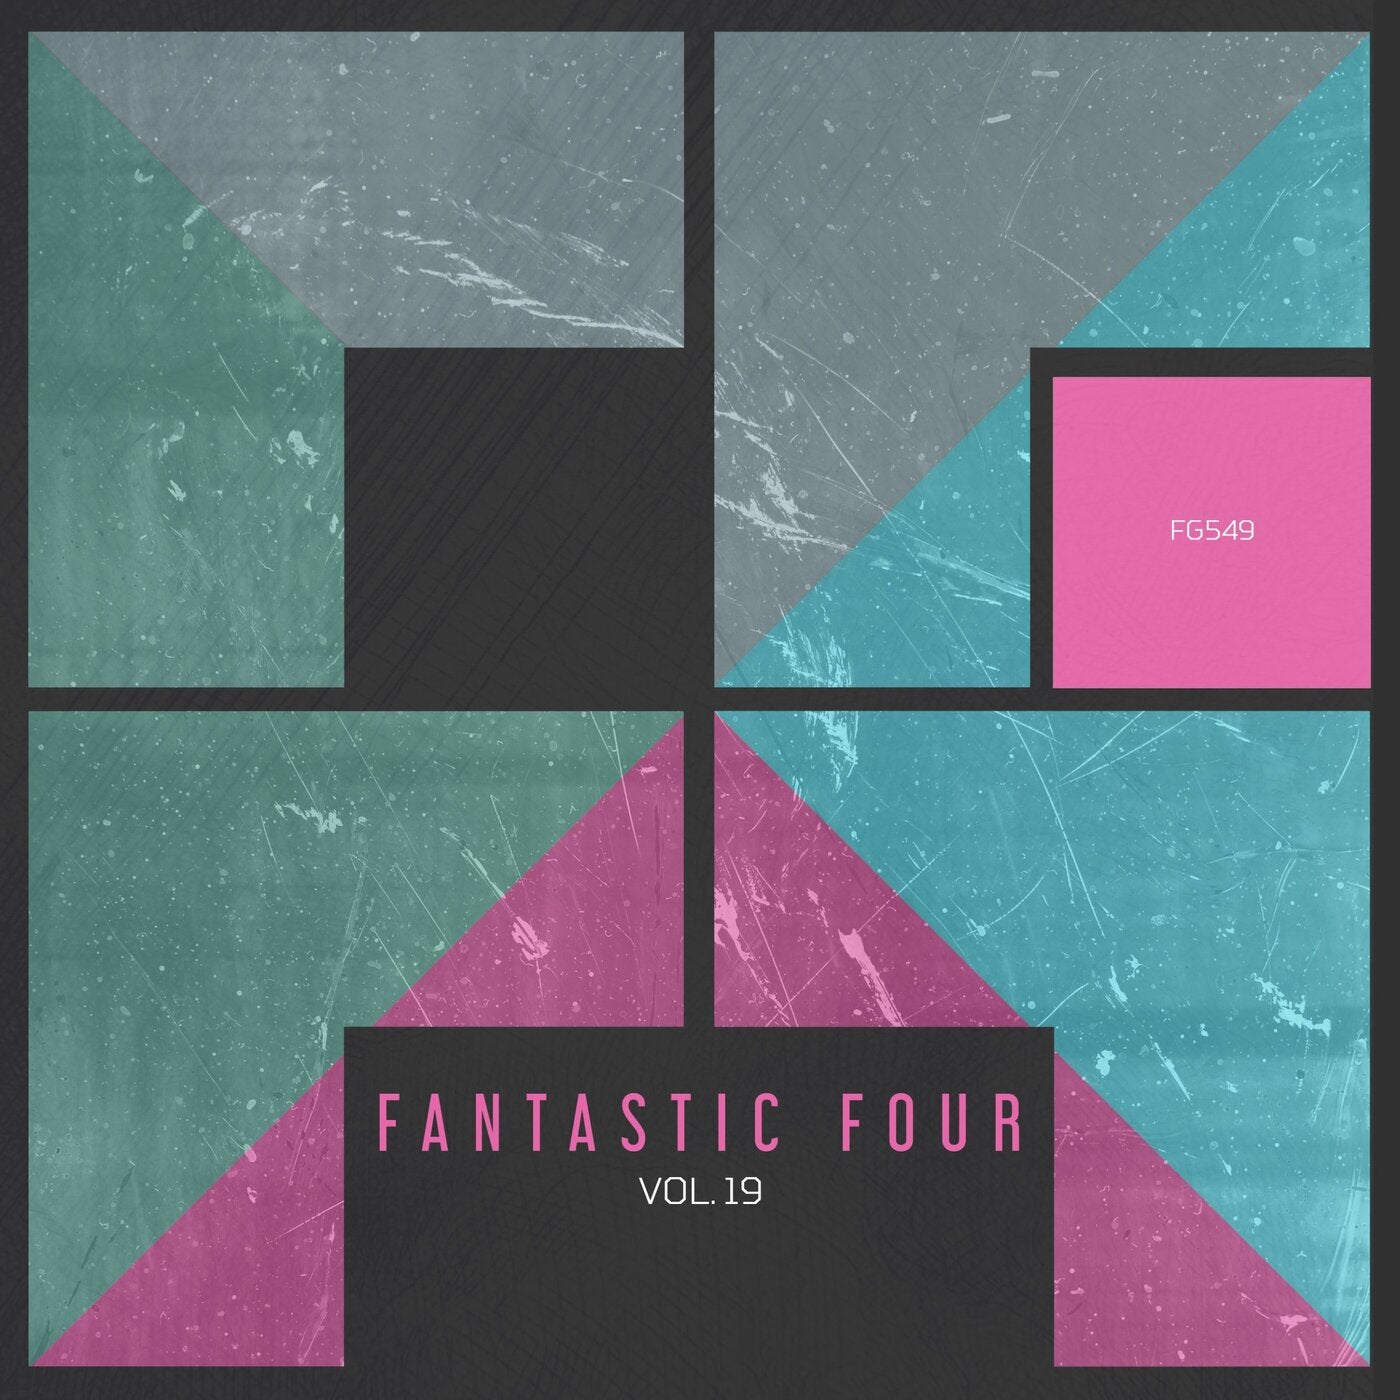 Fantastic Four, Vol. 19